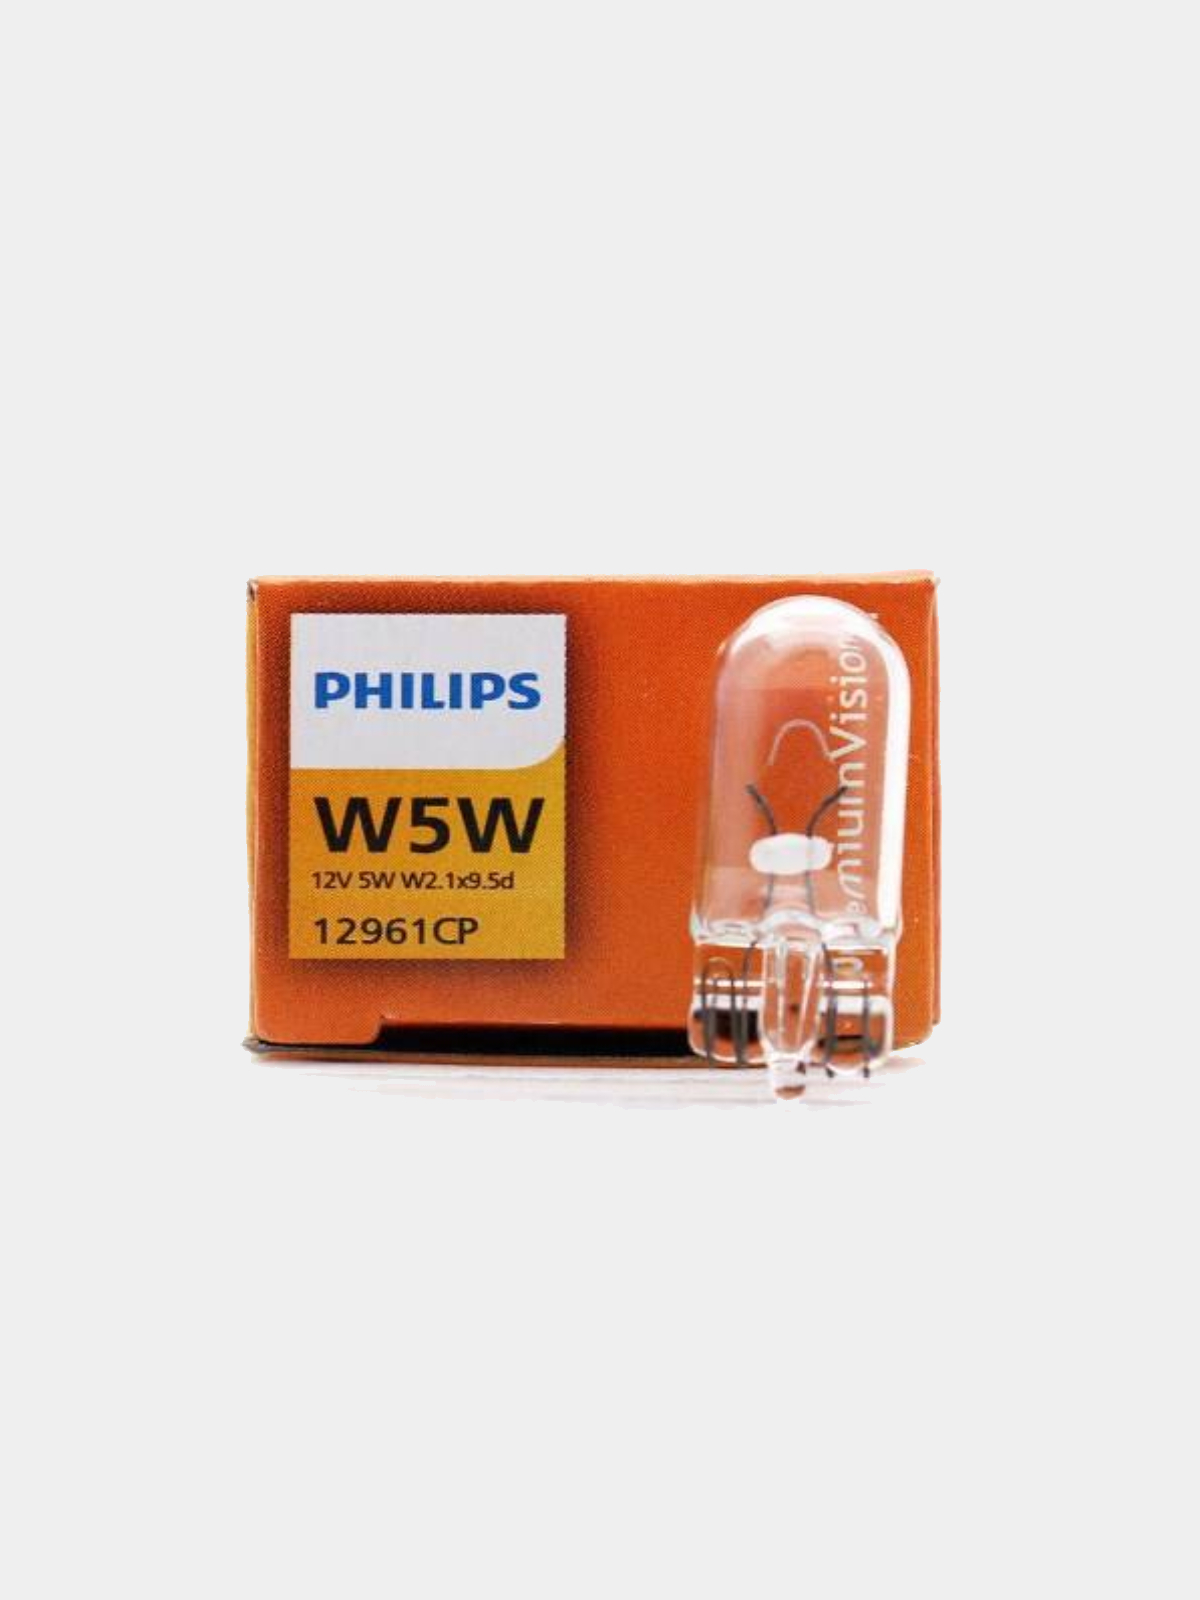 Габаритная лампочка Philips W5W 12v 5w w2,1x9,5d за 74.3 ₽  в .